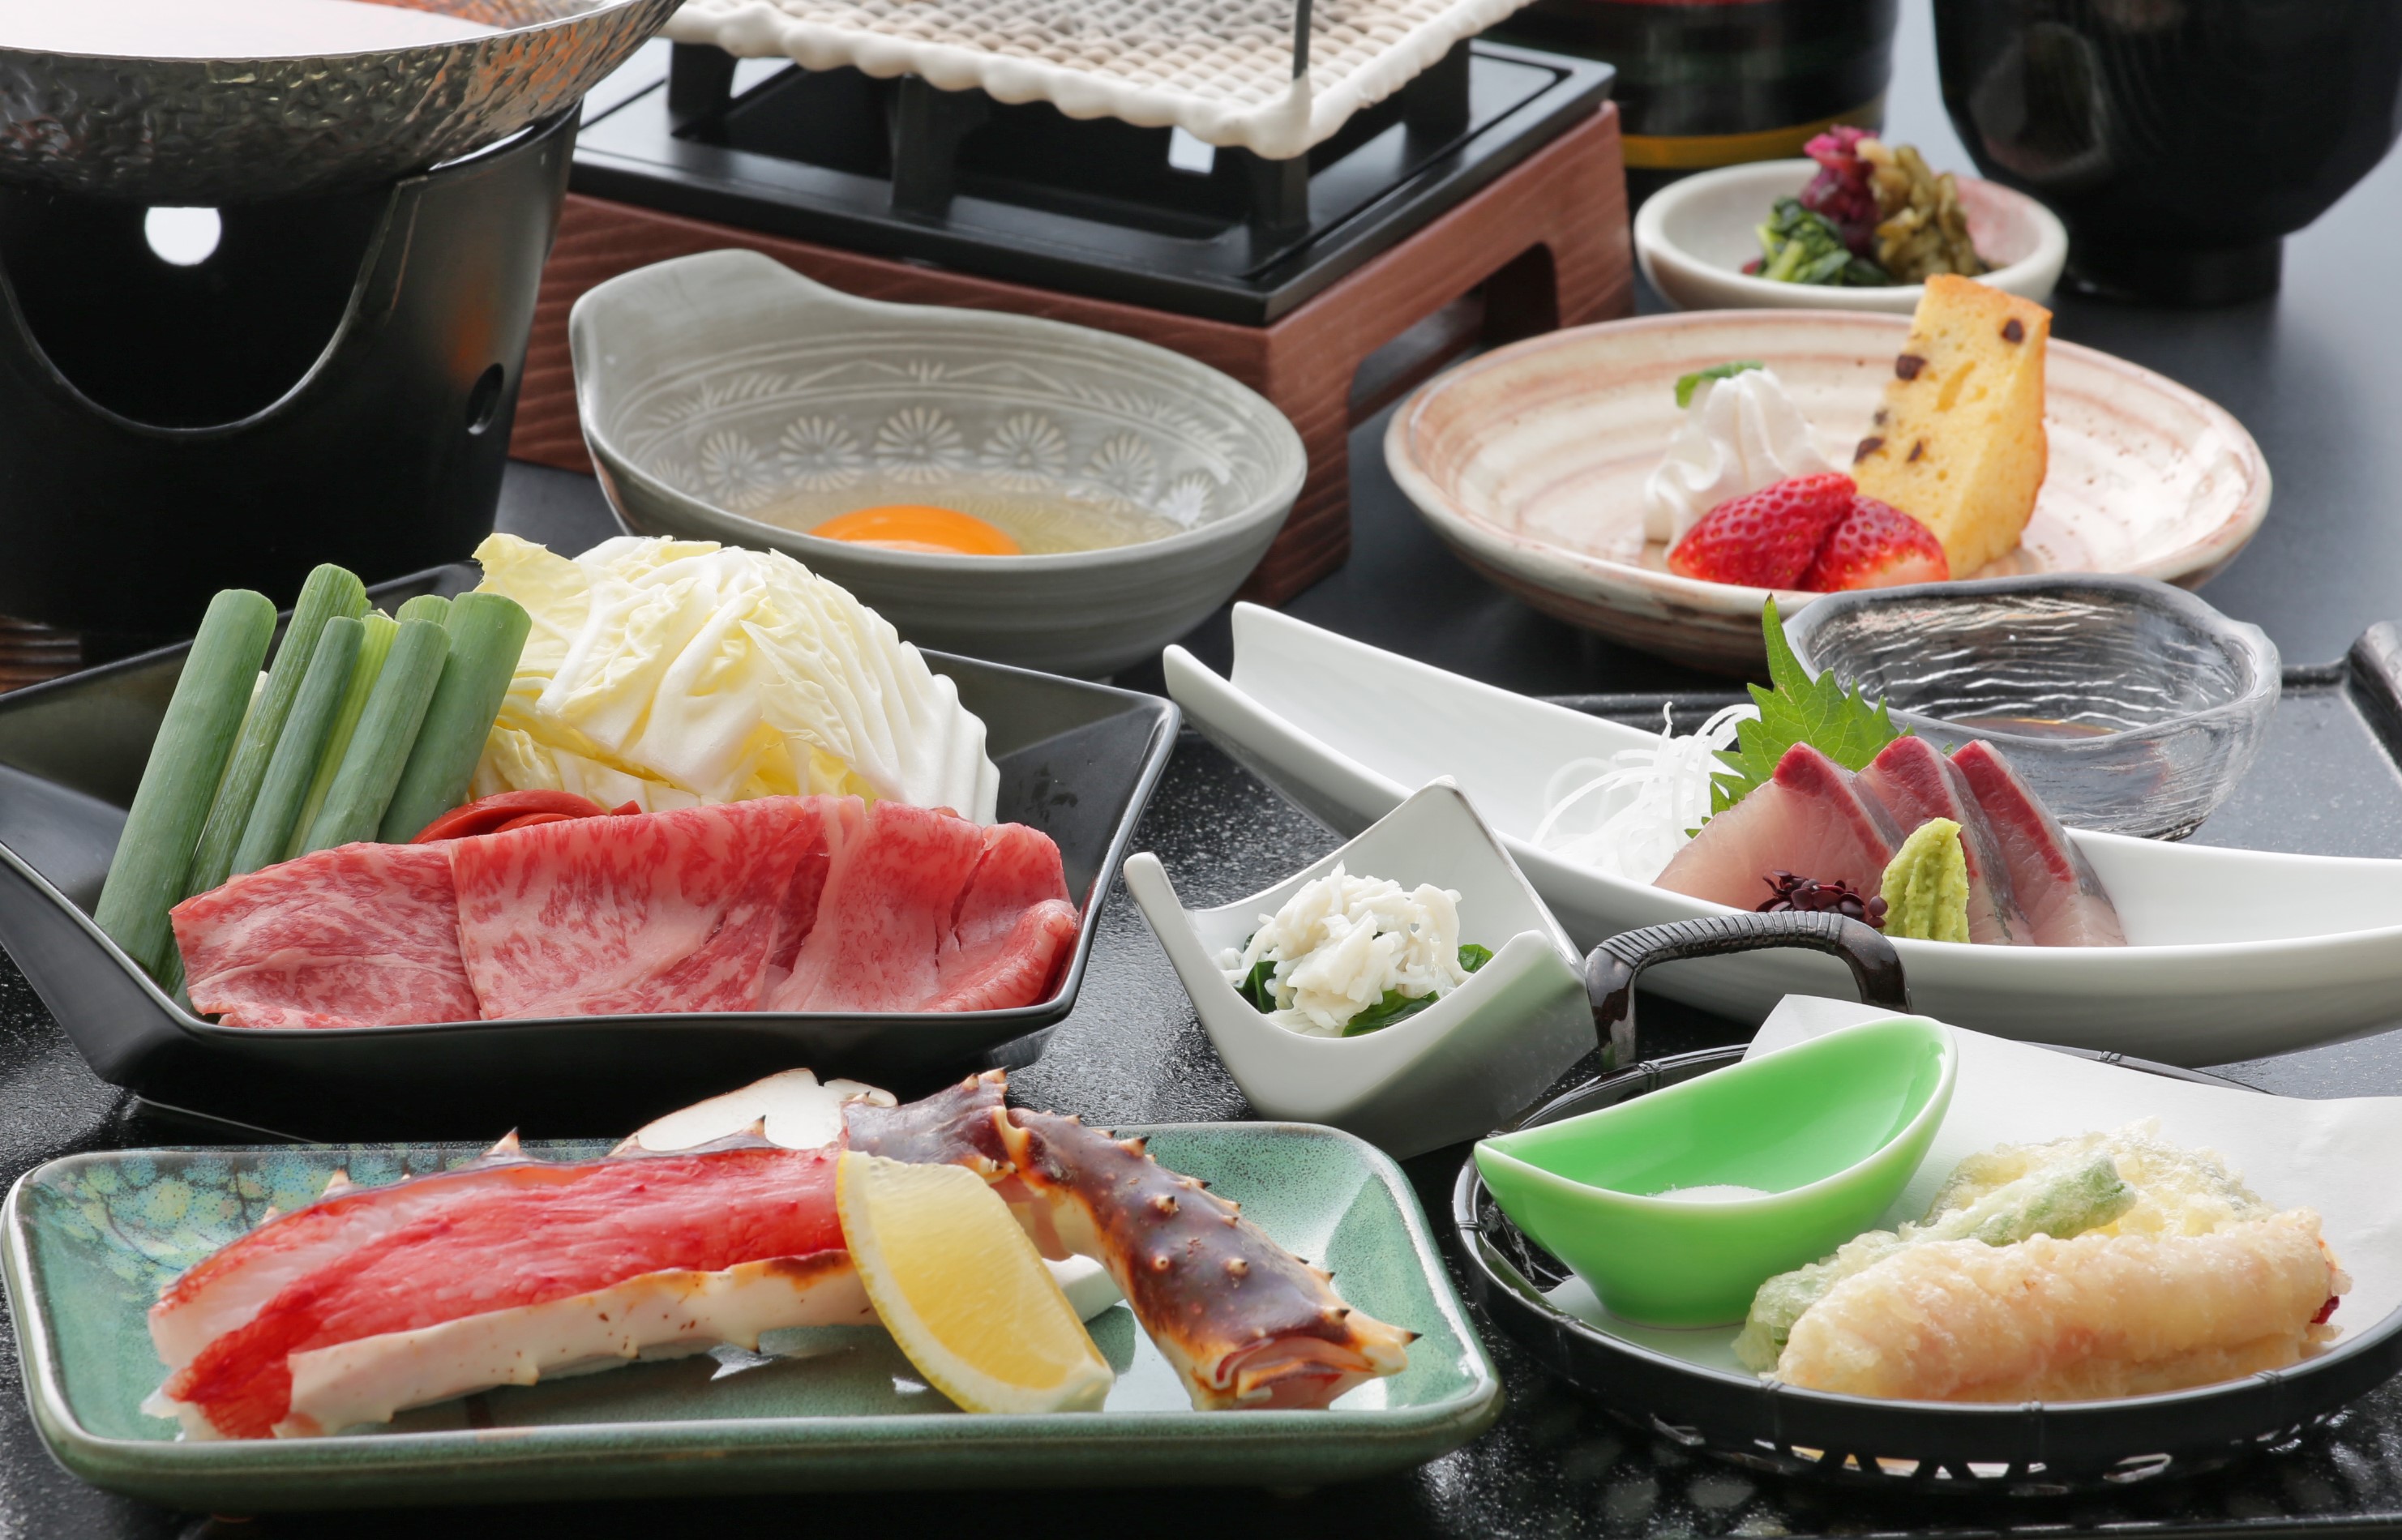 近江牛のすき焼きと焼きタラバが楽しめる和食御膳♪〈イメージ〉